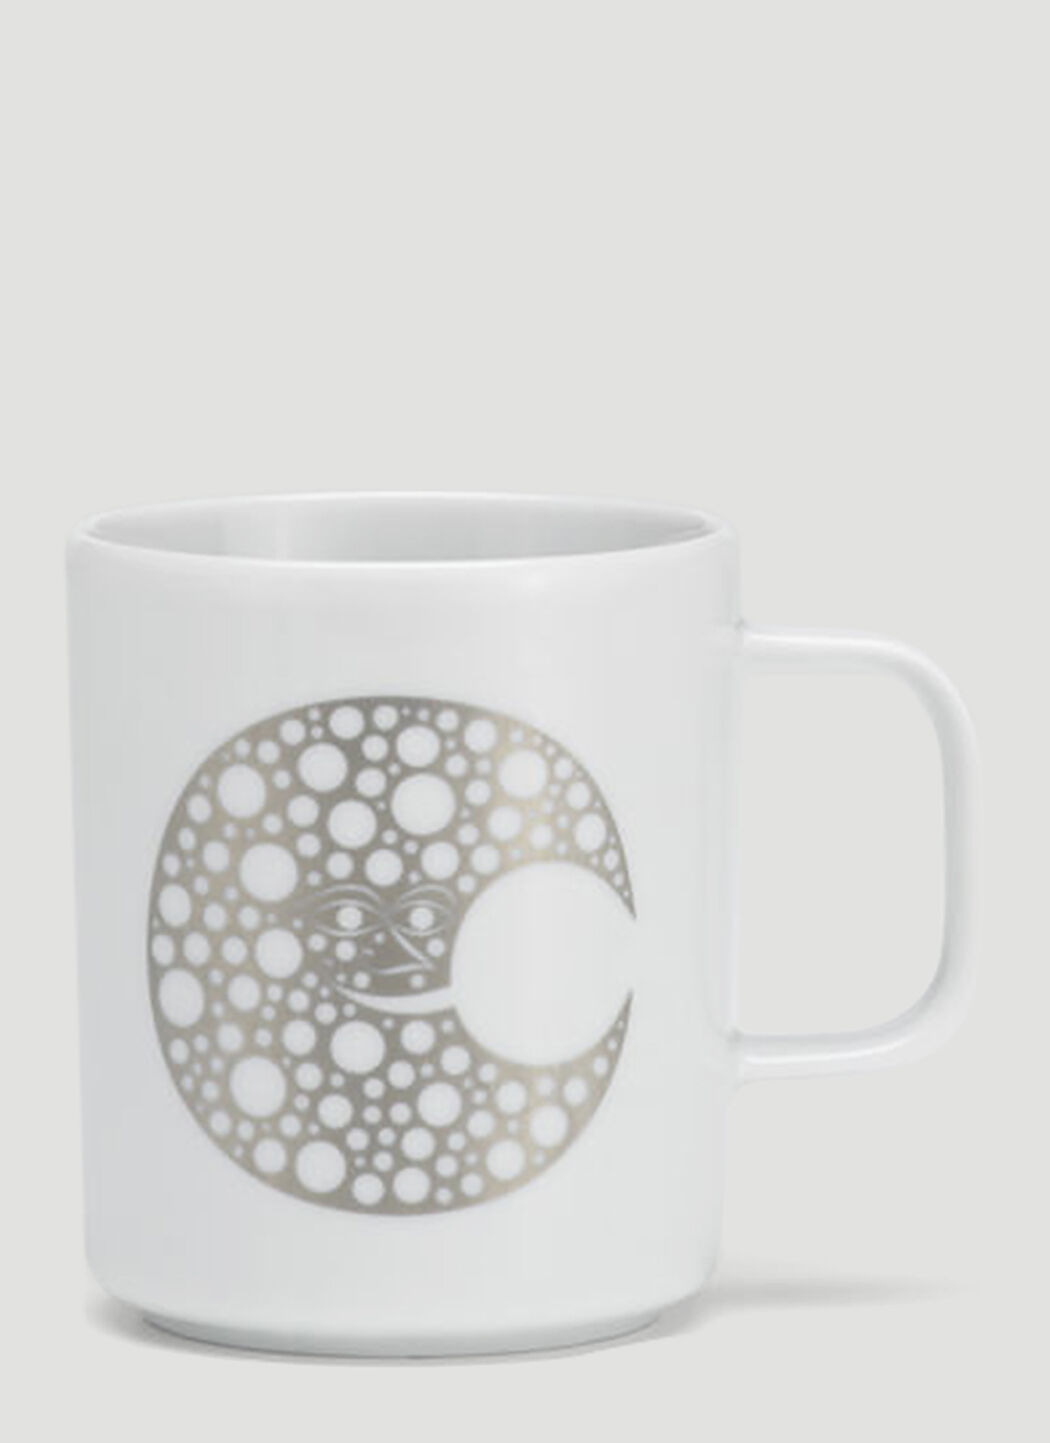 Vitra New Moon Coffee Mug Black wps0670048